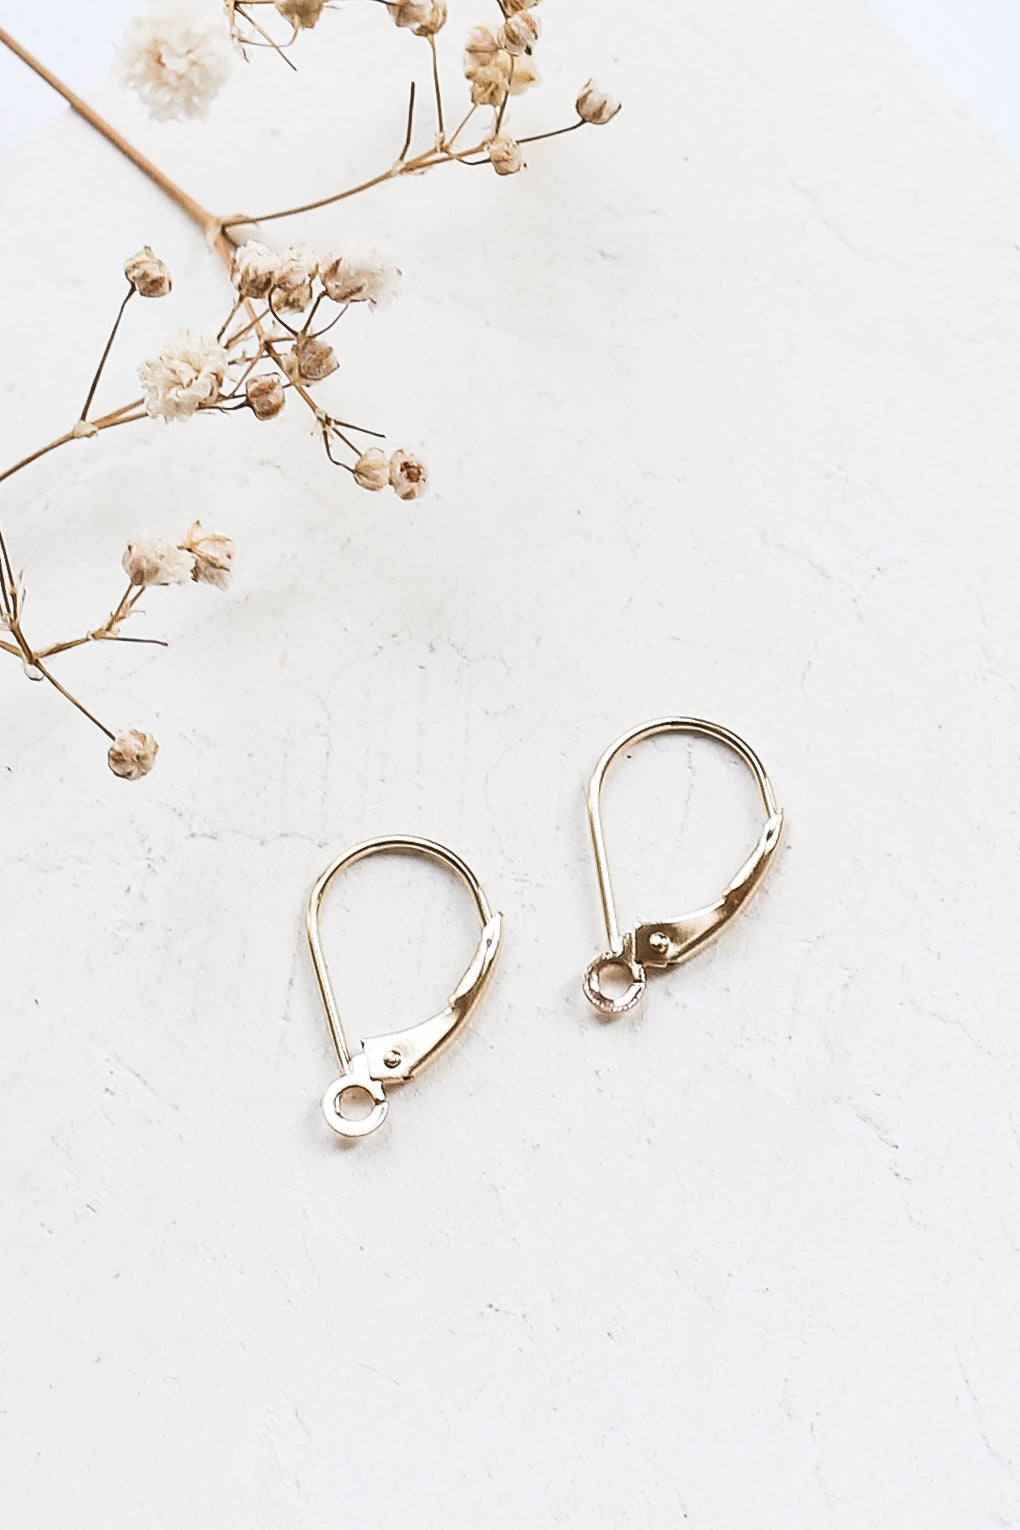 Earring Hooks in 14K Gold – Shlomit Ofir